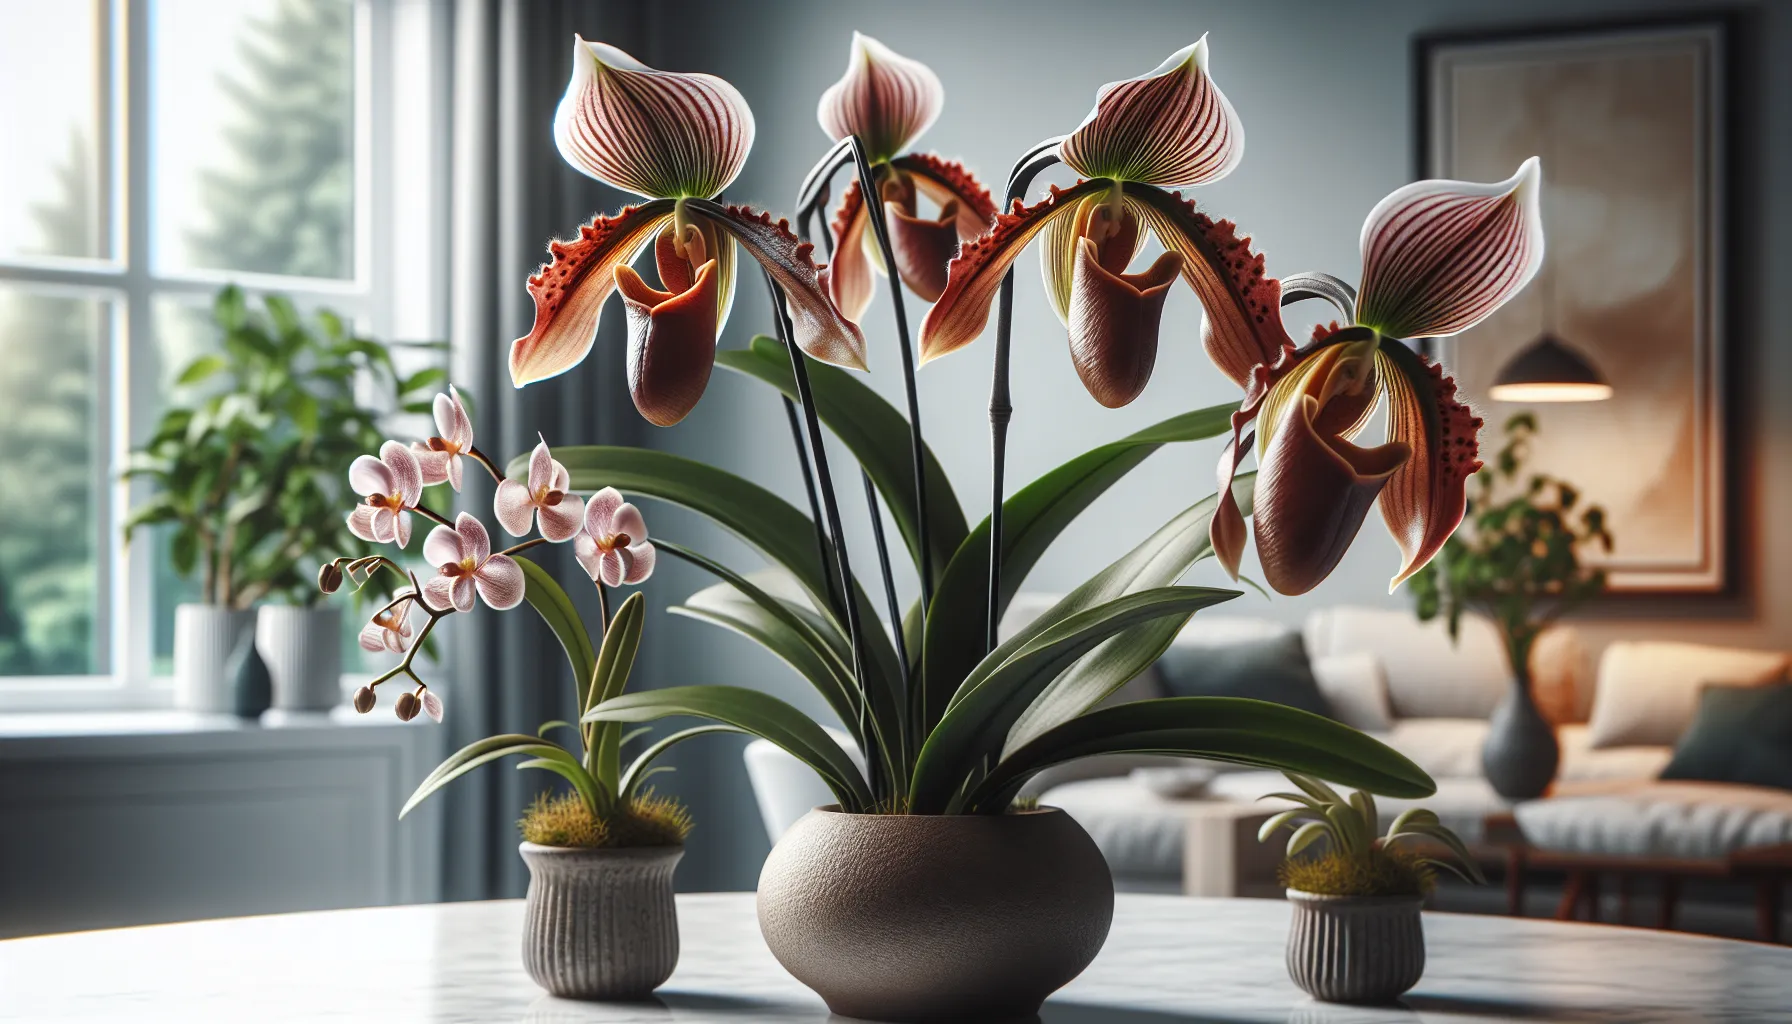 Imagen de una hermosa orquídea zapato Paphiopedilum en un hogar, mostrando sus características únicas y el cuidado que requiere en casa